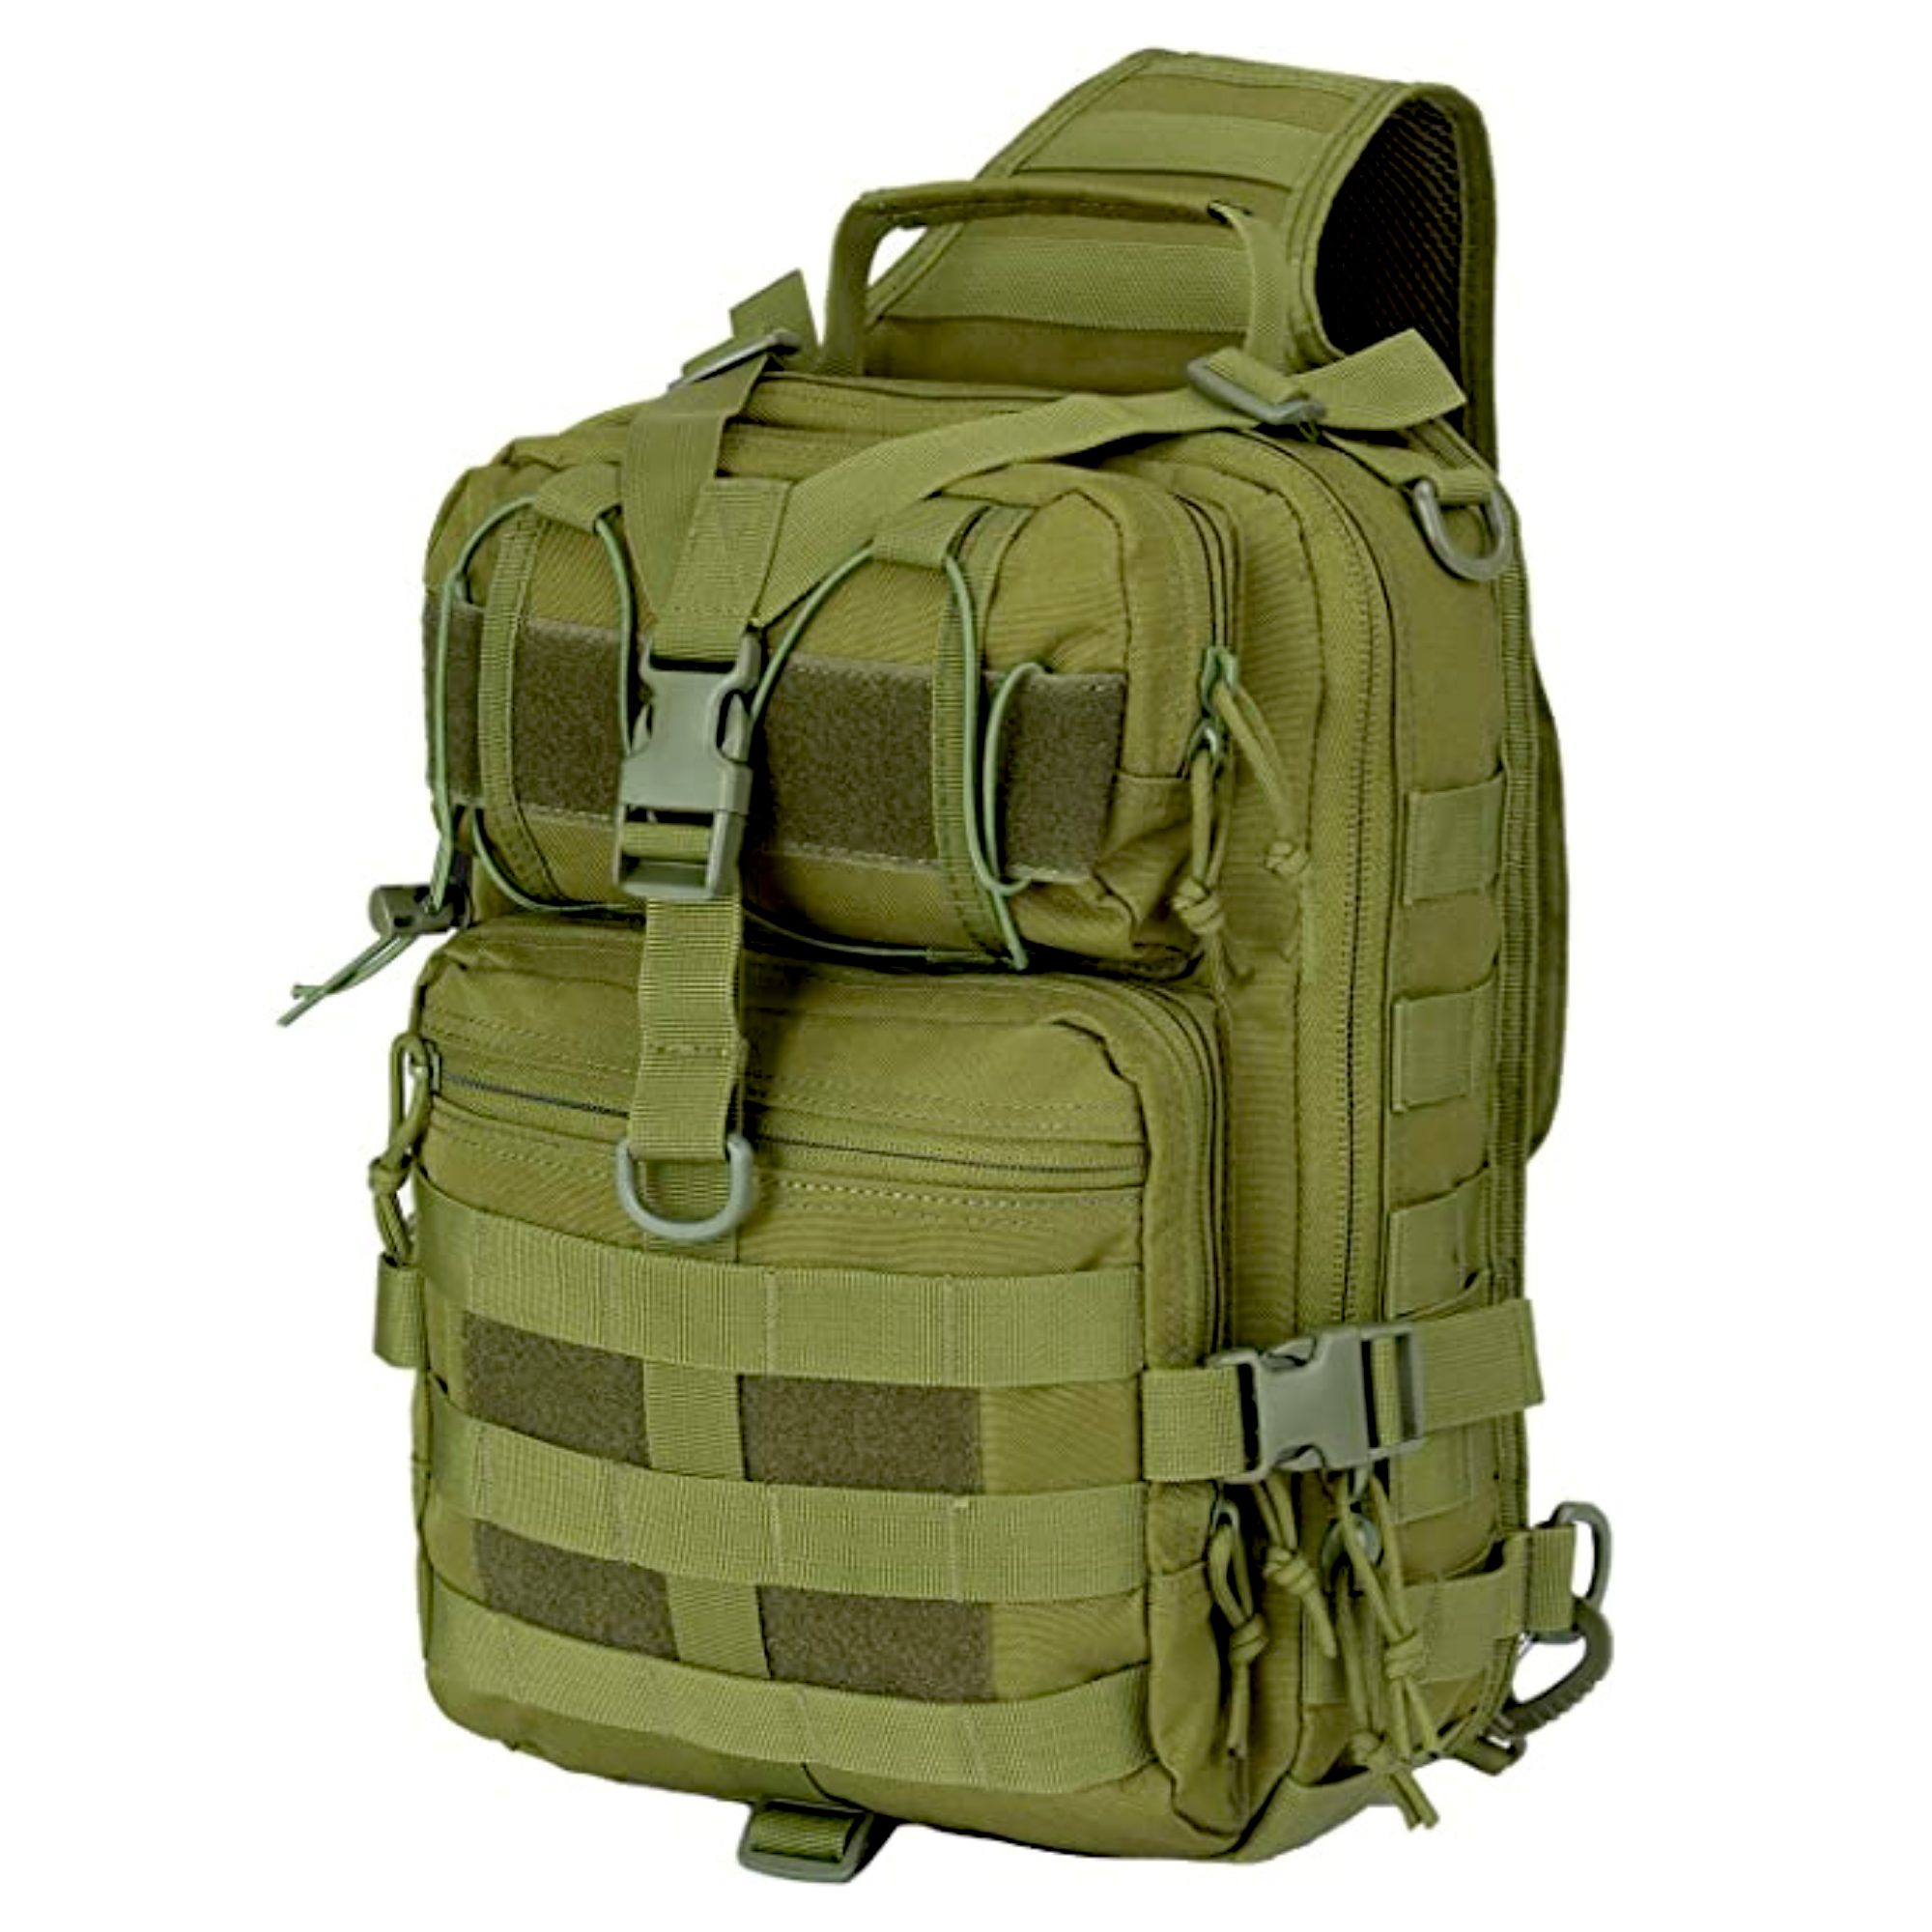 Jupiter Gear Tactical Military Sling Backpack 15L Shoulder Bag Molle Outdoor Daypack Backpack with Adjustable Strap